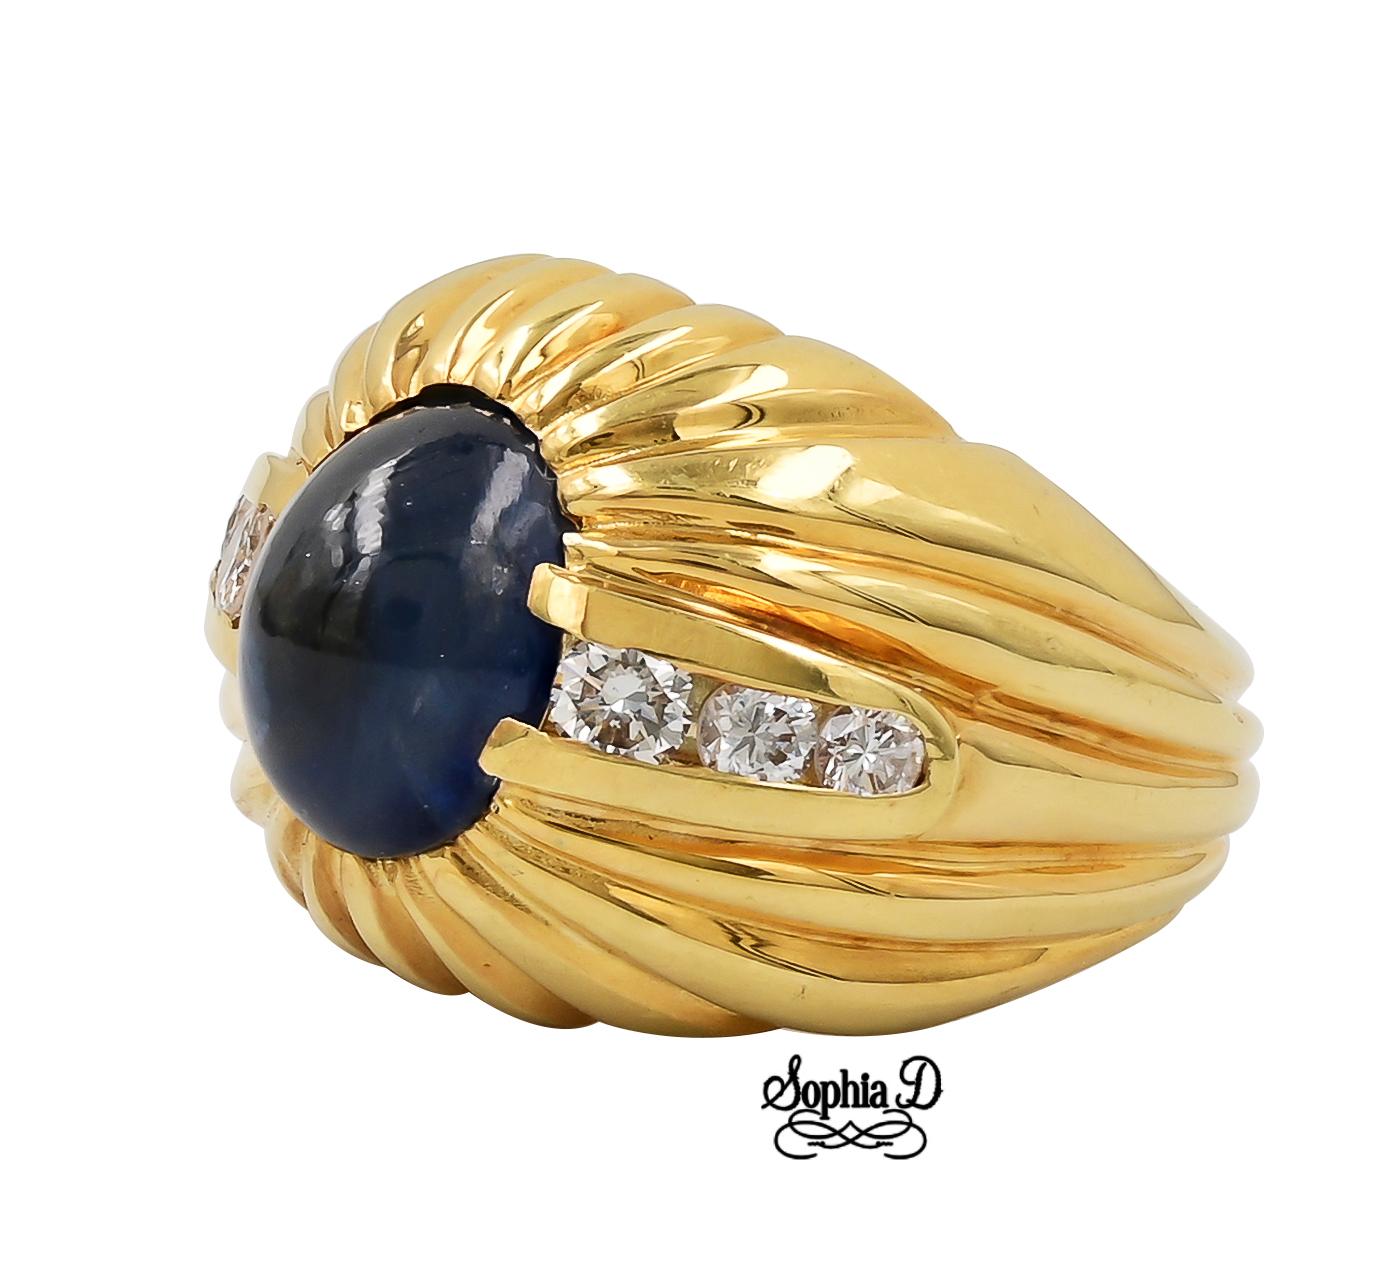 Bague en or jaune 18K avec saphir bleu et diamant.

Sophia D by Joseph Dardashti Ltd est connue dans le monde entier depuis 35 ans et s'inspire du design classique de l'Art déco qui fusionne avec les techniques de fabrication modernes.  